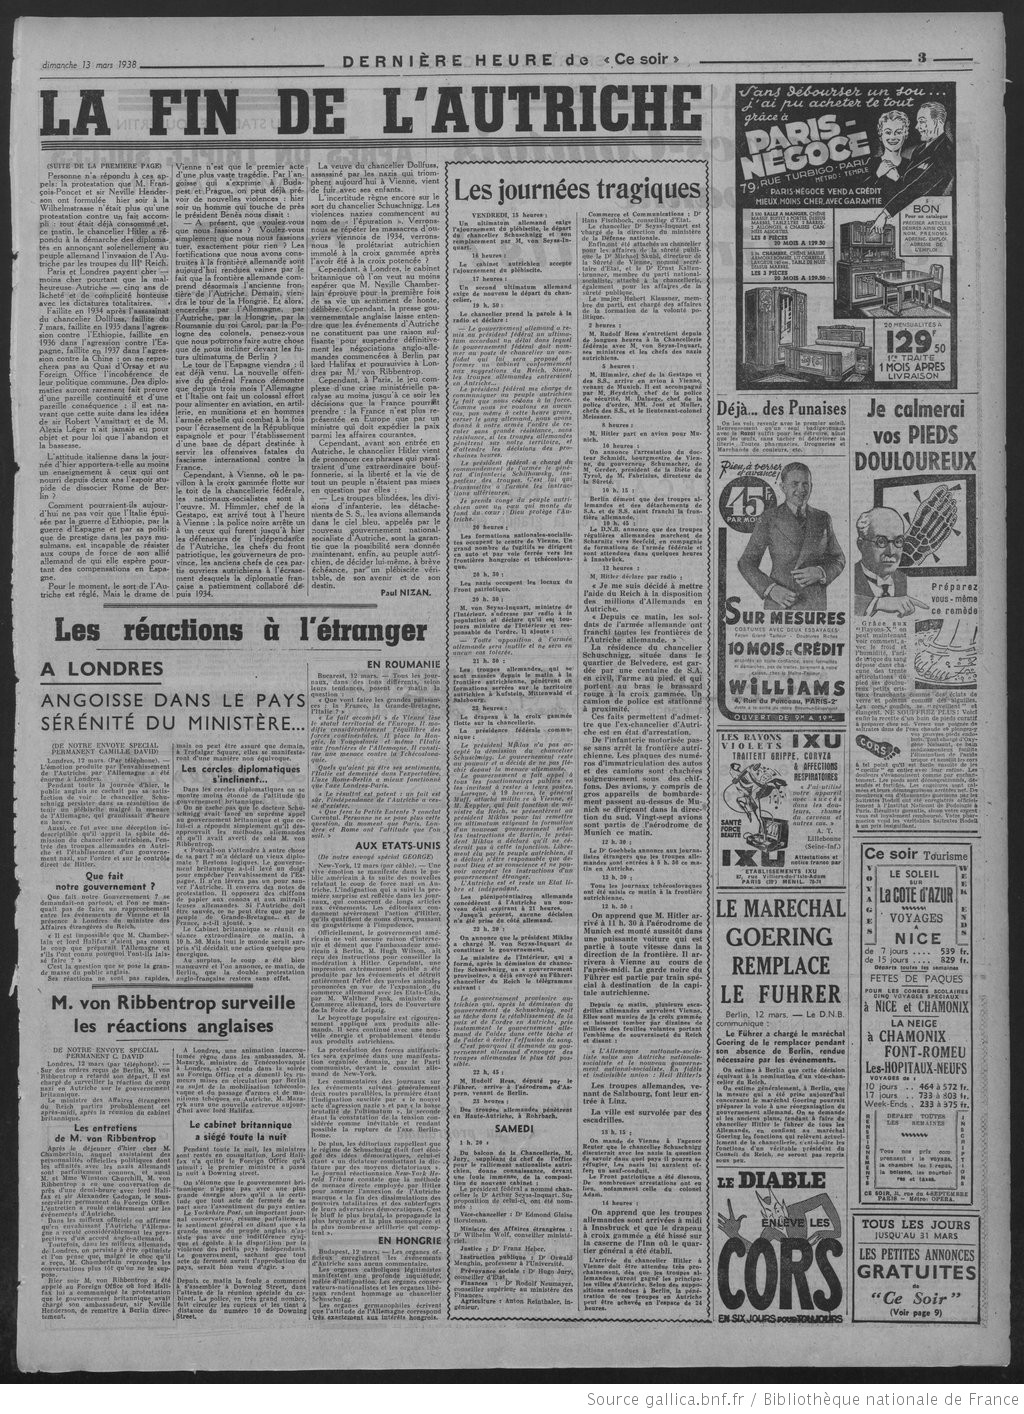 Anschluss : Quand le journal communiste "Ce Soir" dénonçait la lâcheté et la complicité honteuse de Paris et Londres